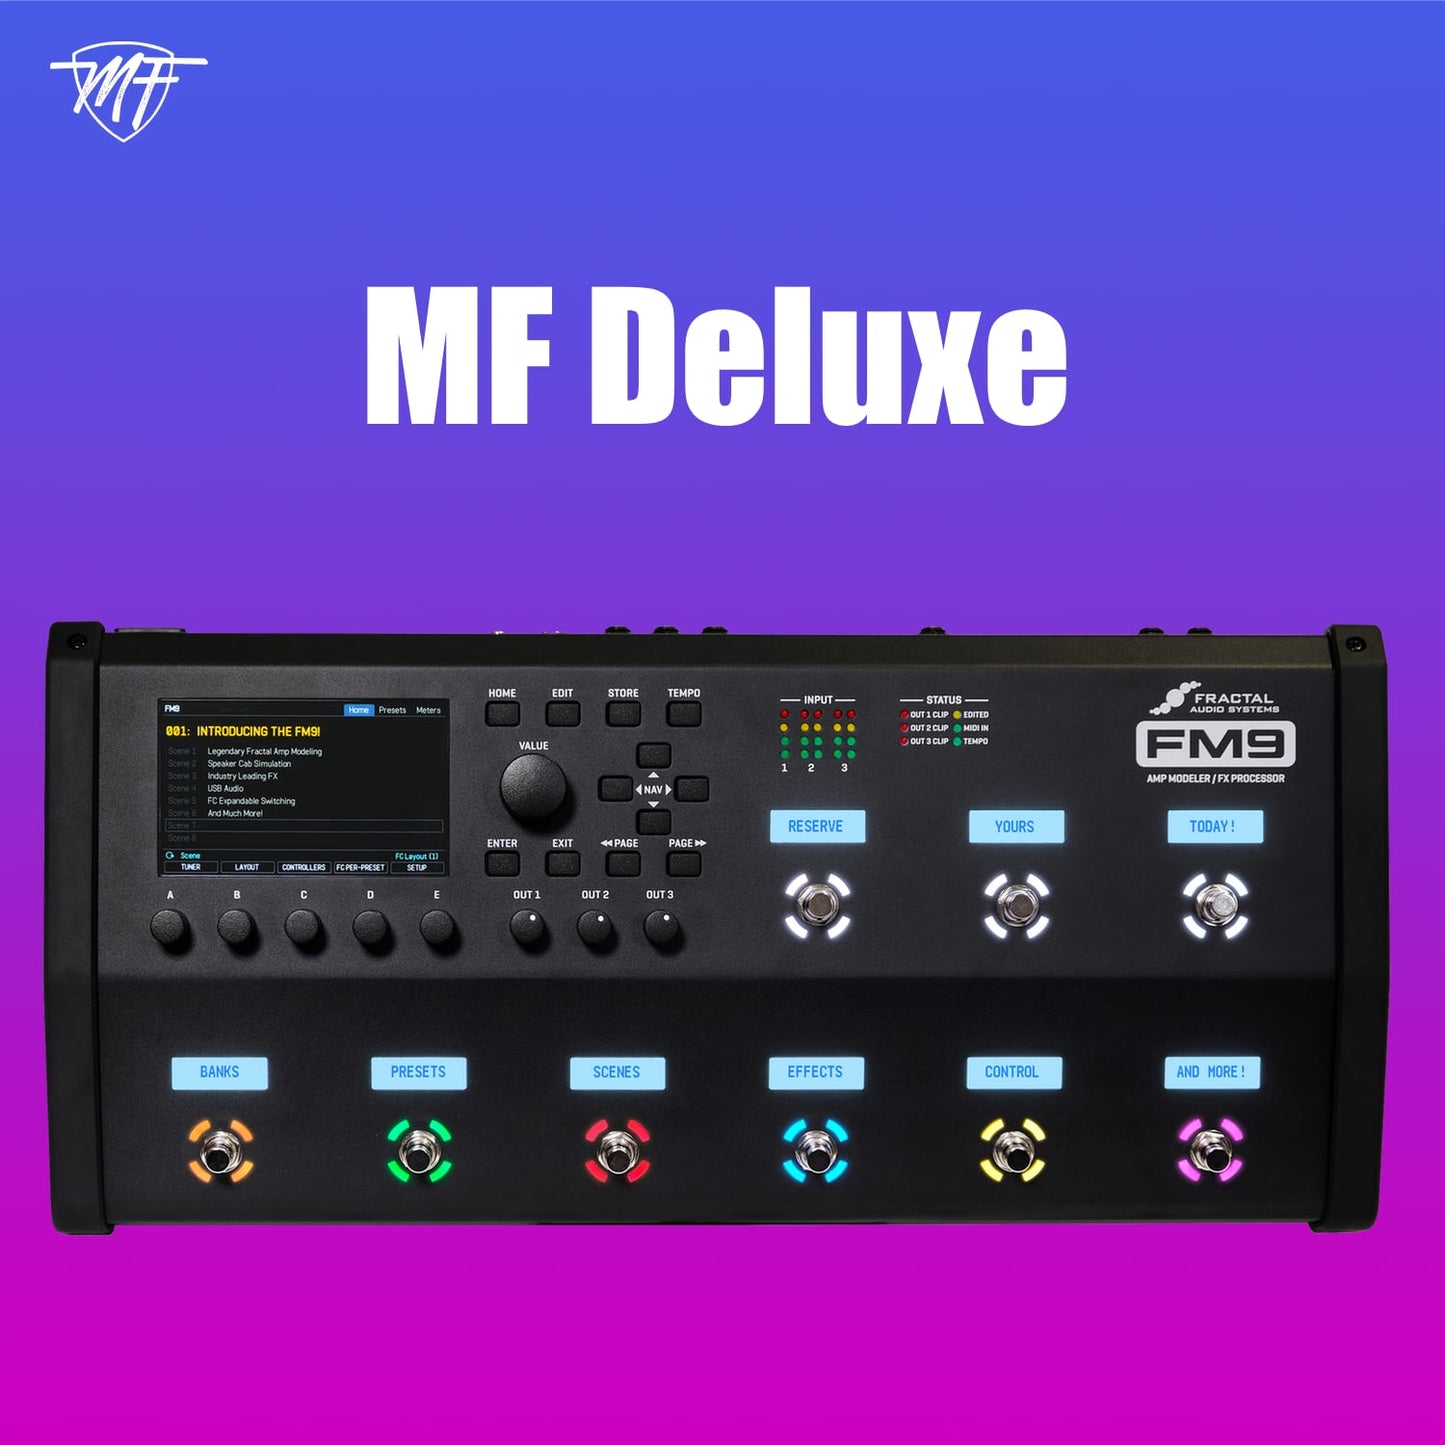 MF Deluxe FM9